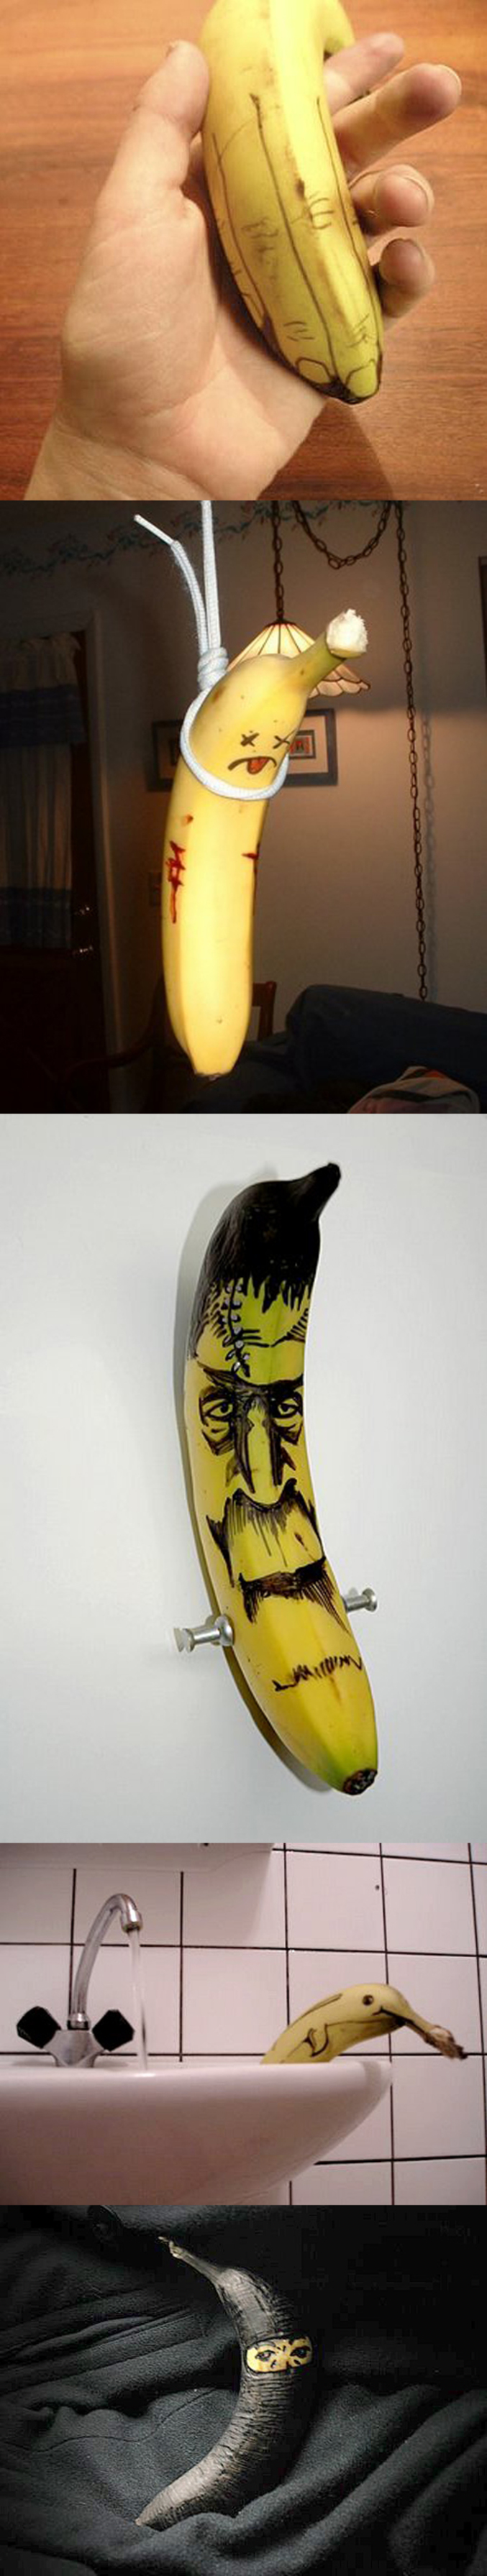 Une nouvelle série de dessins sur des bananes